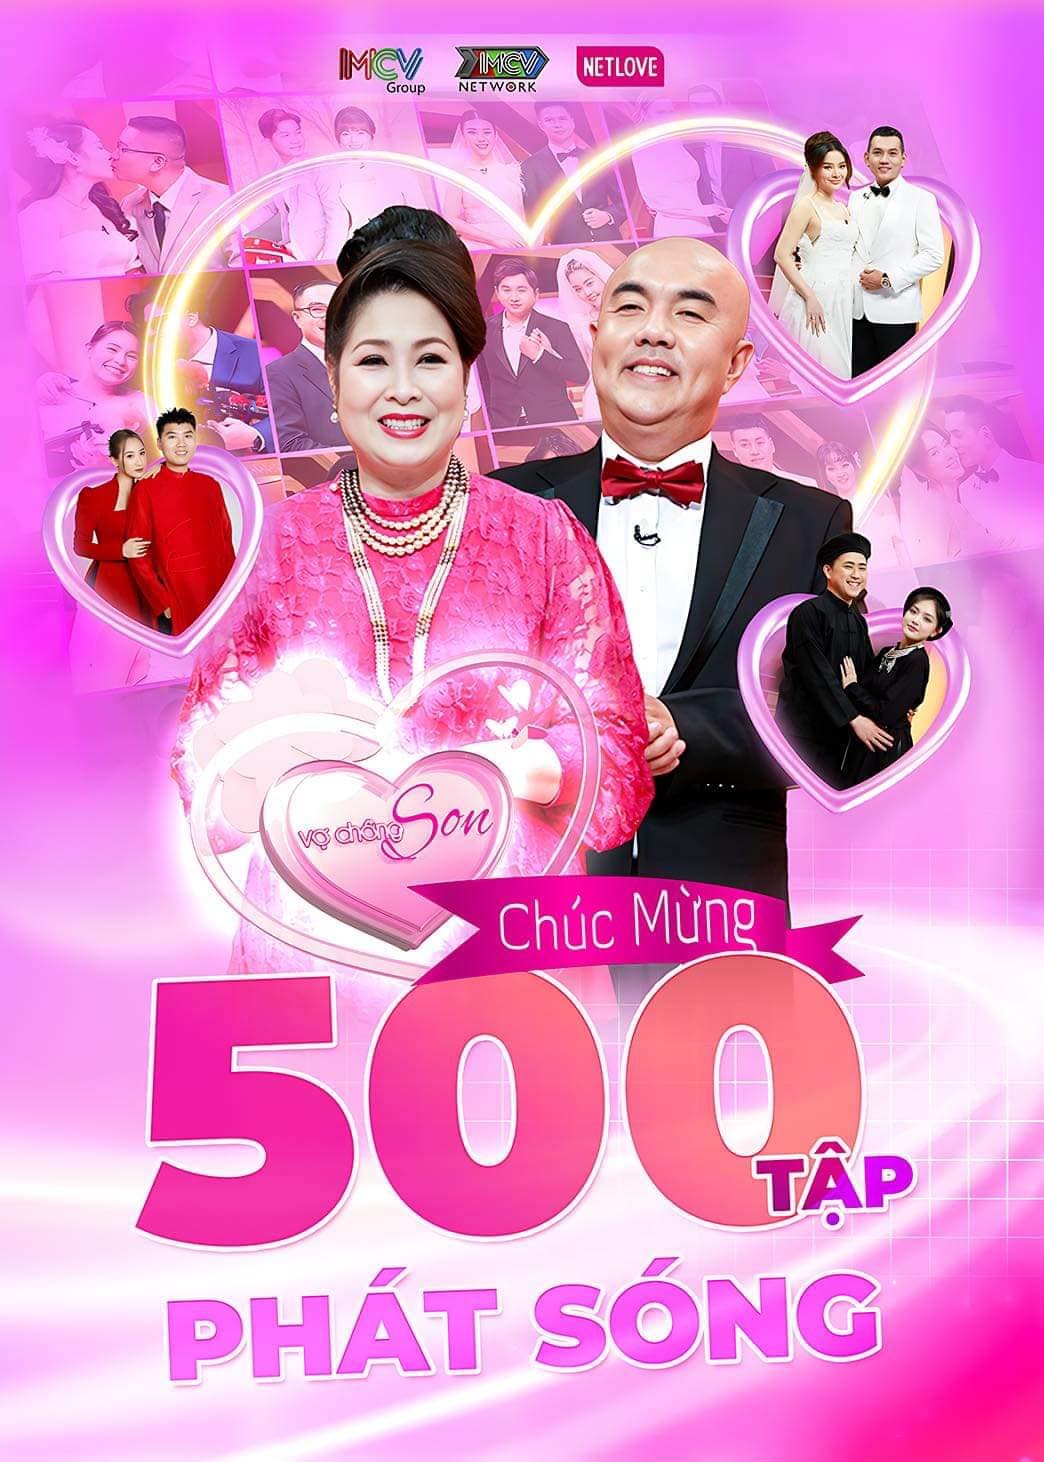 Chương trình 'Vợ chồng son' đạt cột mốc 500 tập phát sóng